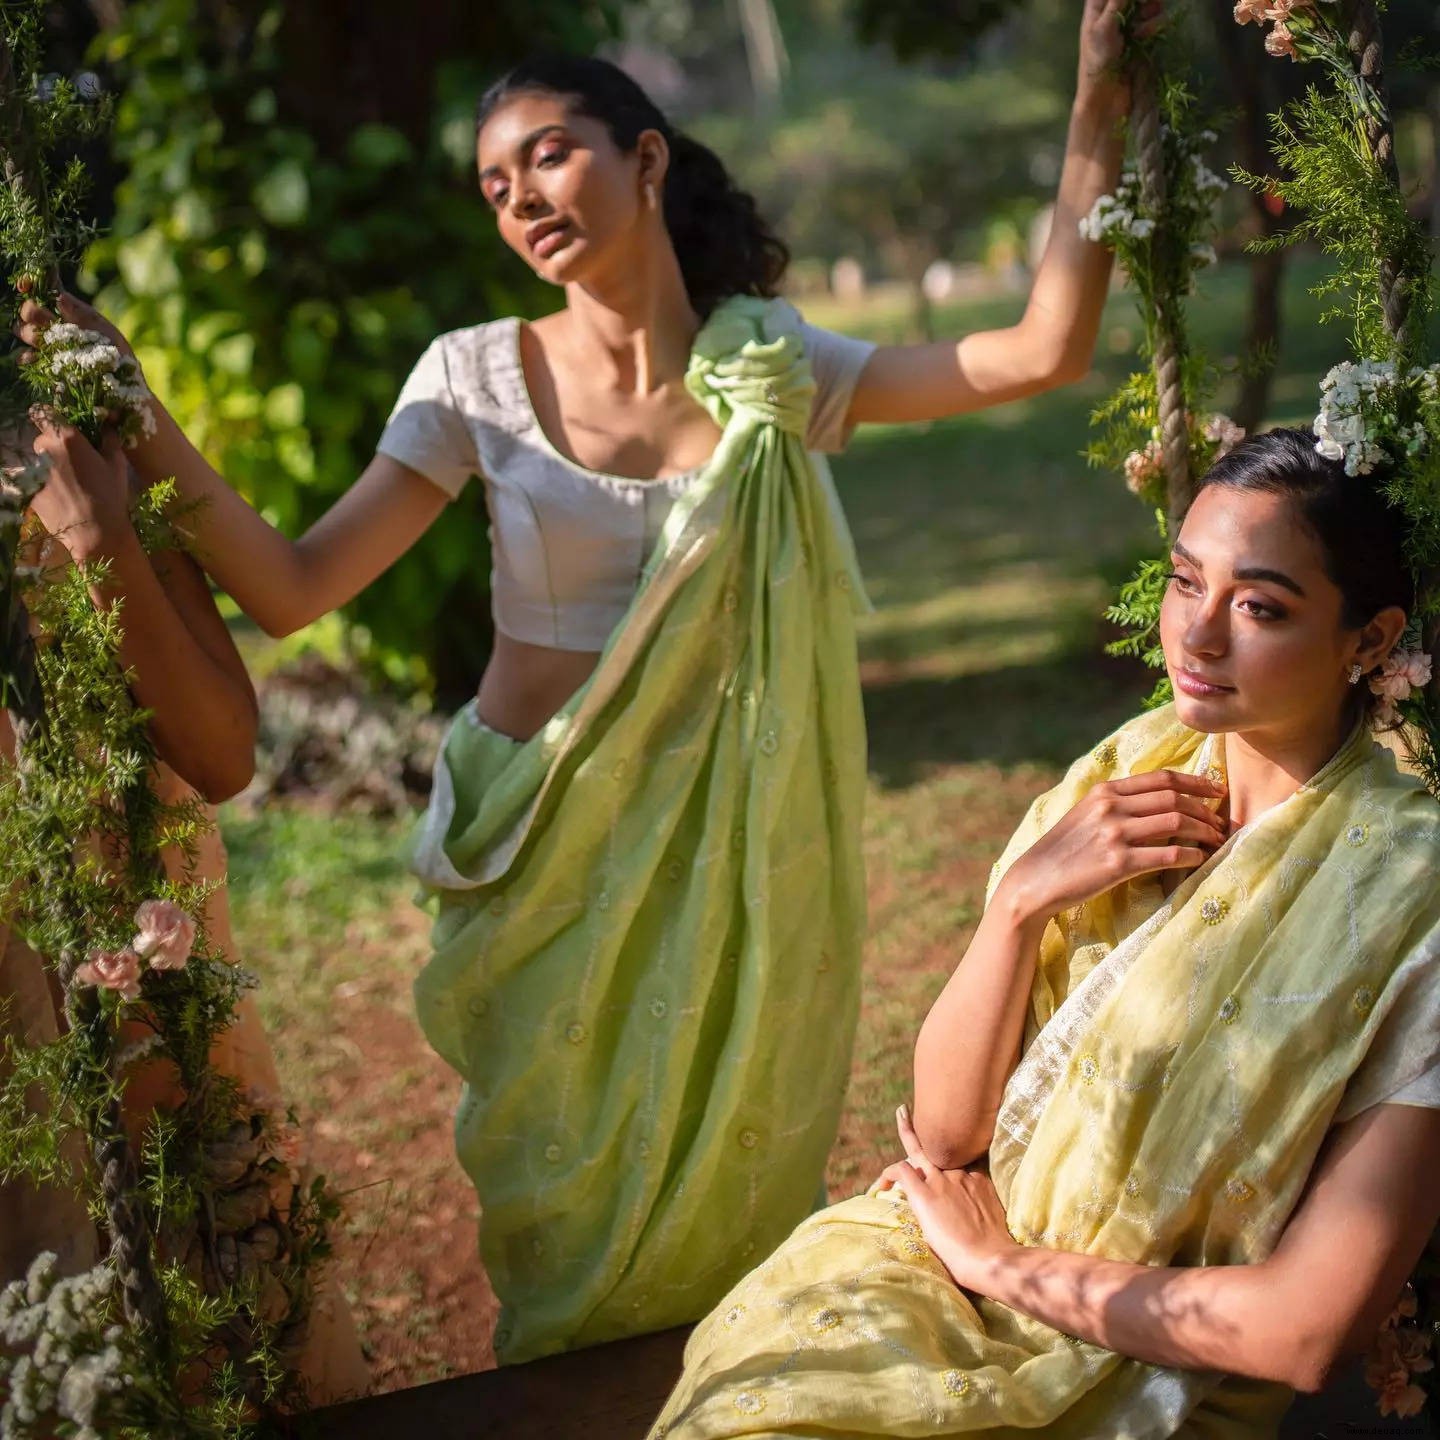 5 unverzichtbare Sari-Stile für den Sommer 